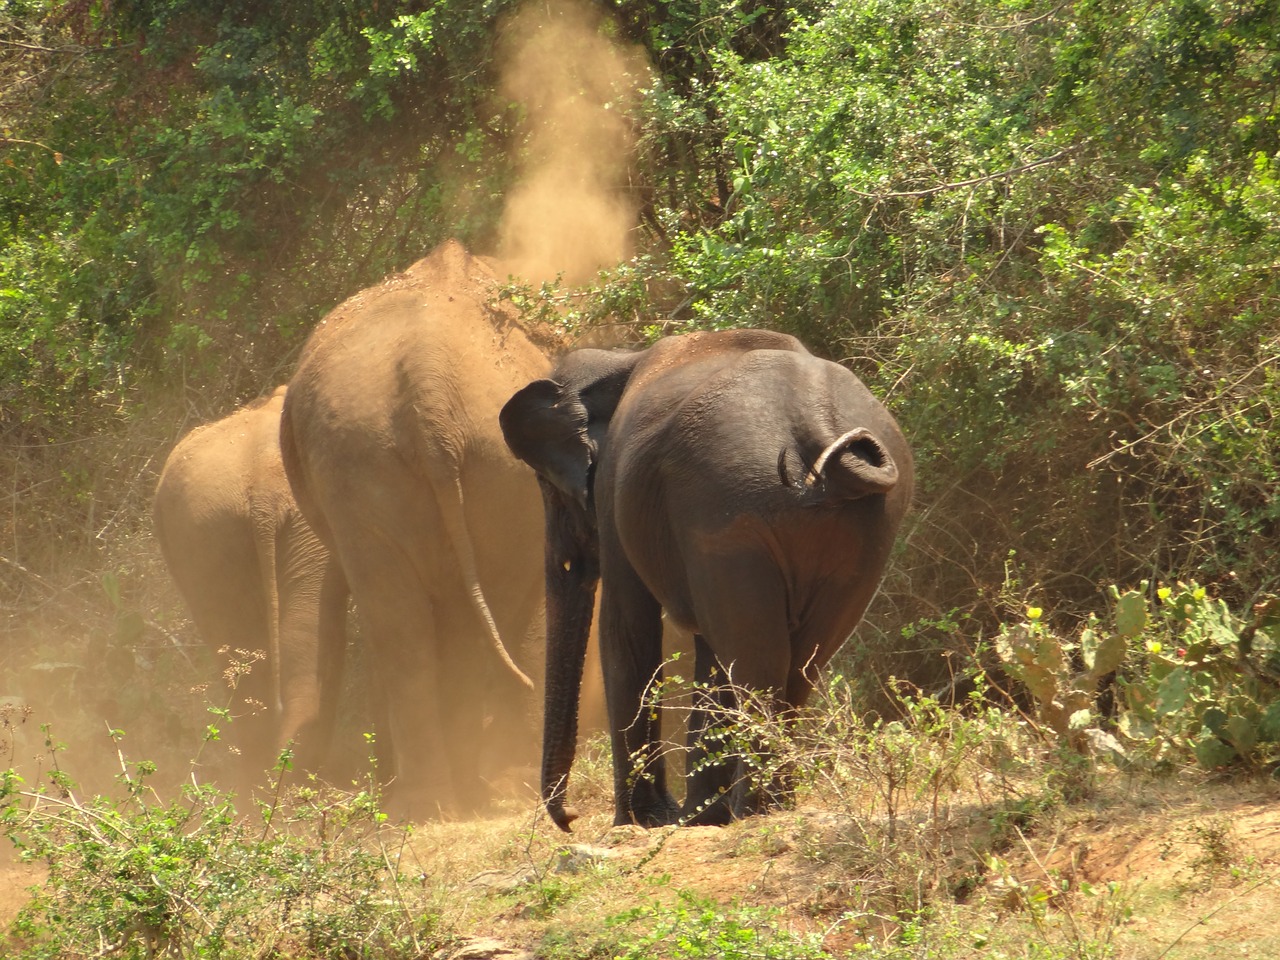 elephants mud bathing bank free photo